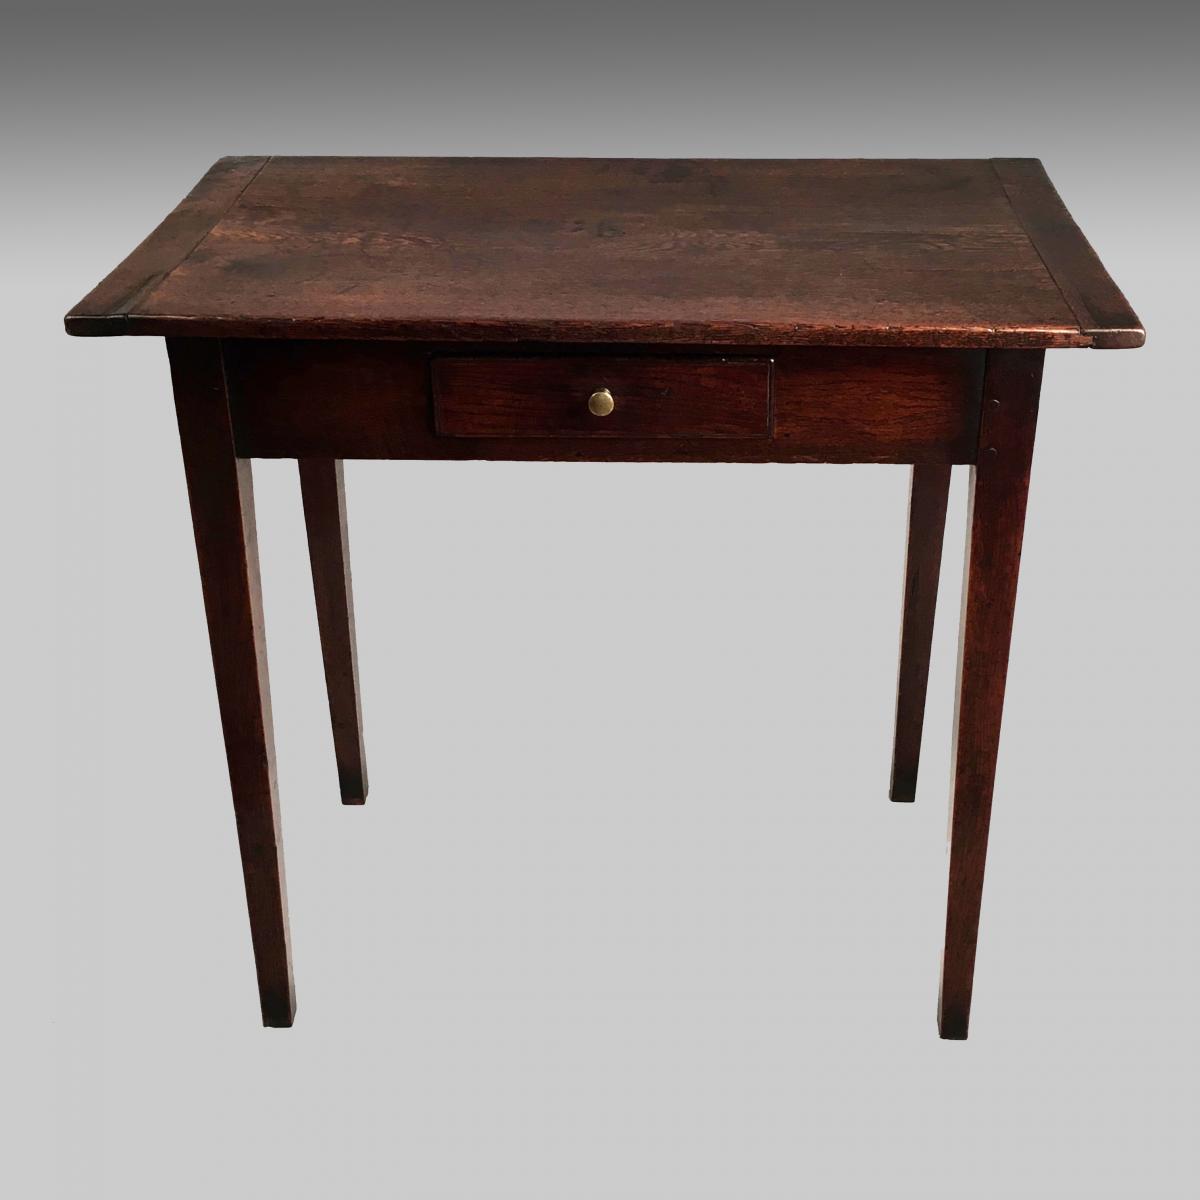 Georgian oak side table